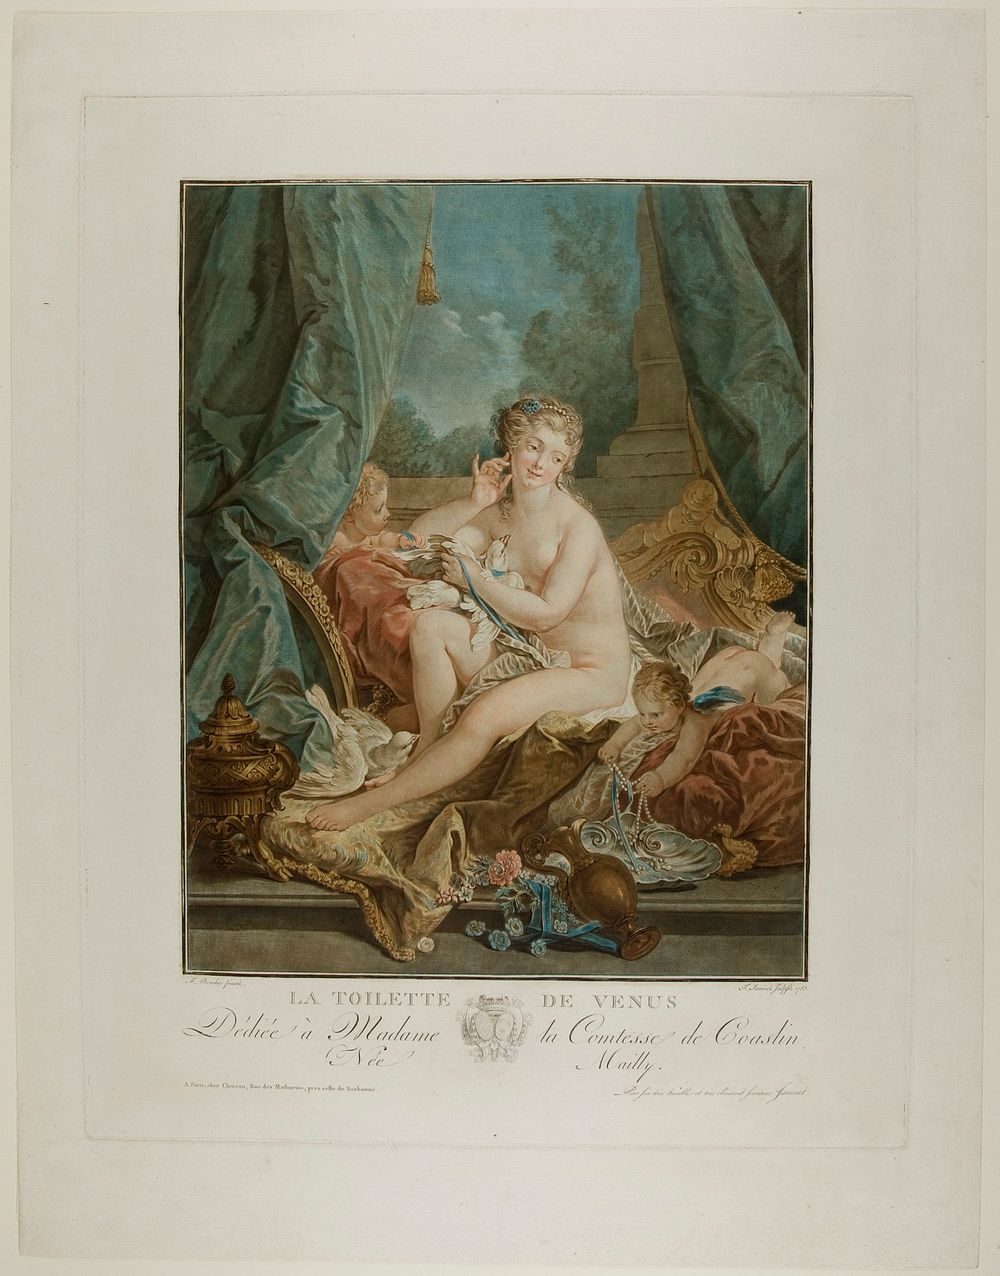 La Toilette de Venus by Jean François Janinet